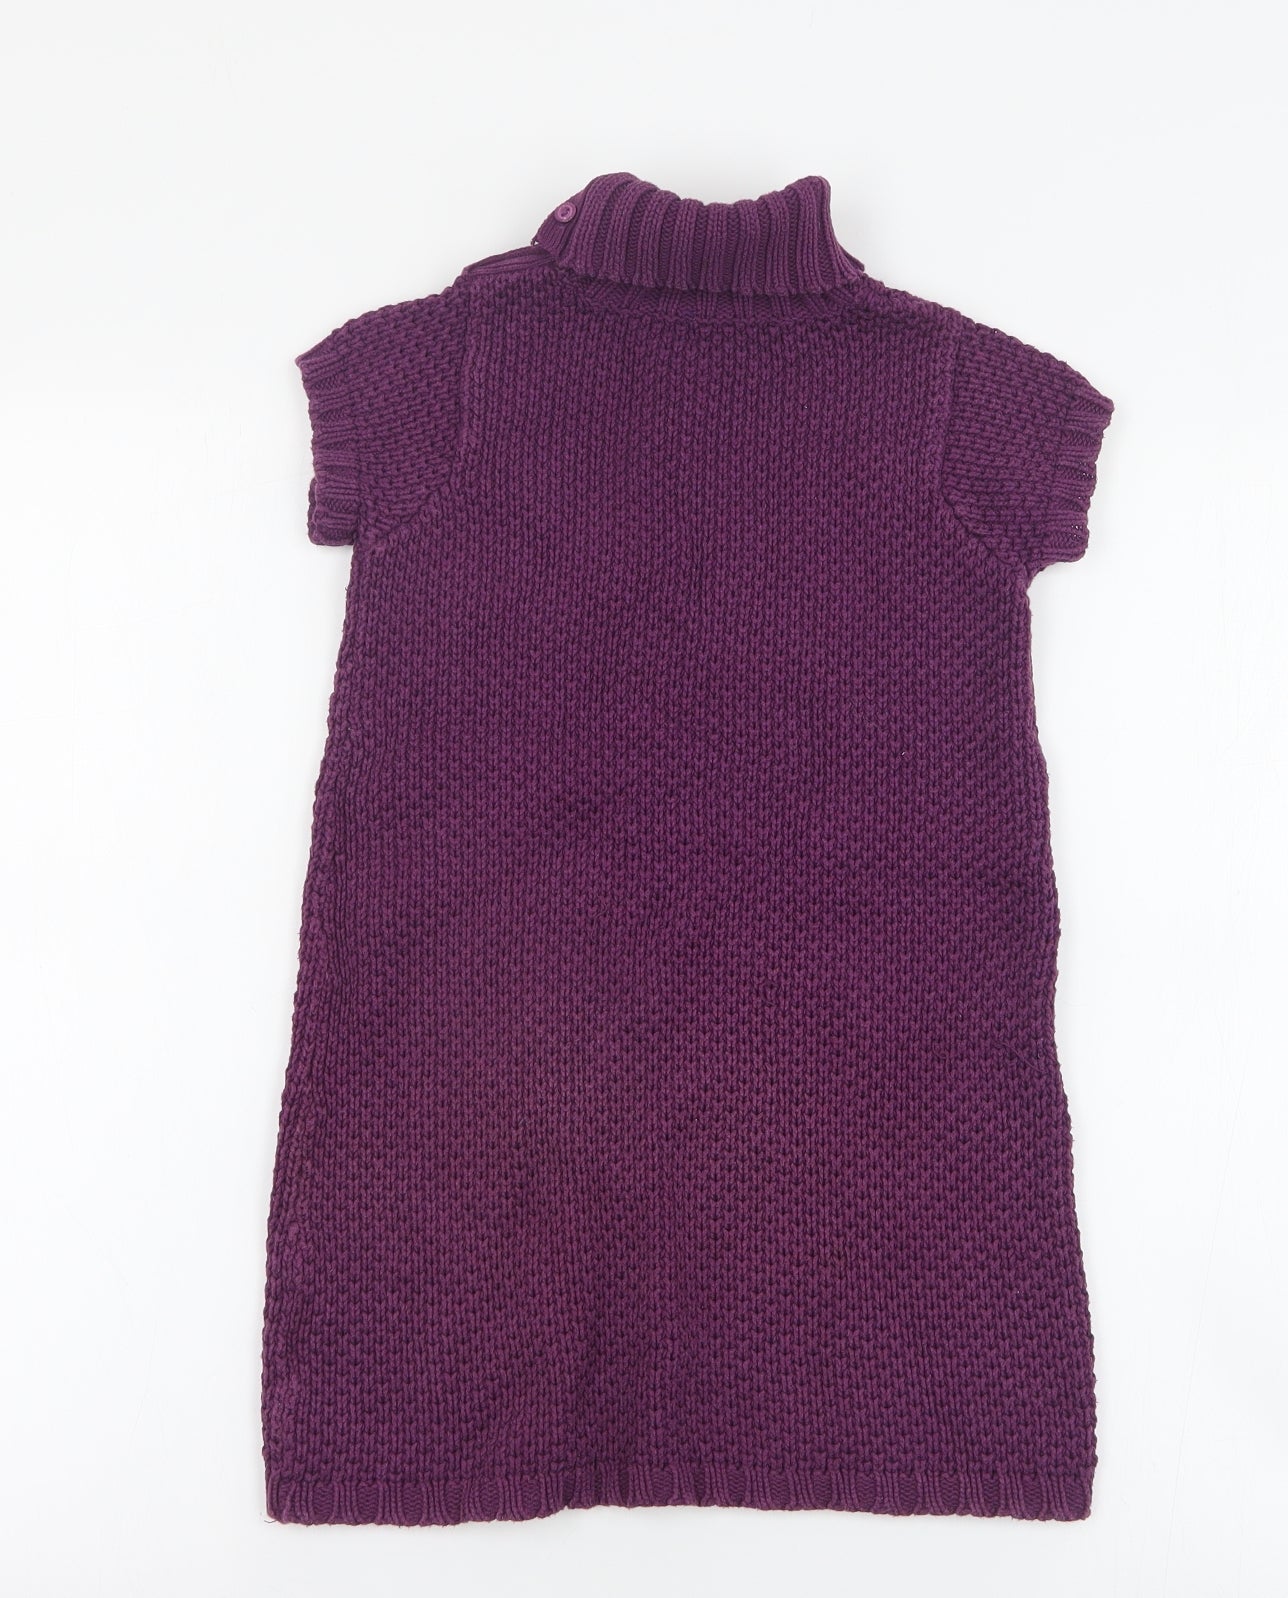 Julians Dress Girls Purple  Cotton Jumper Dress  Size 5 Years  High Neck Button